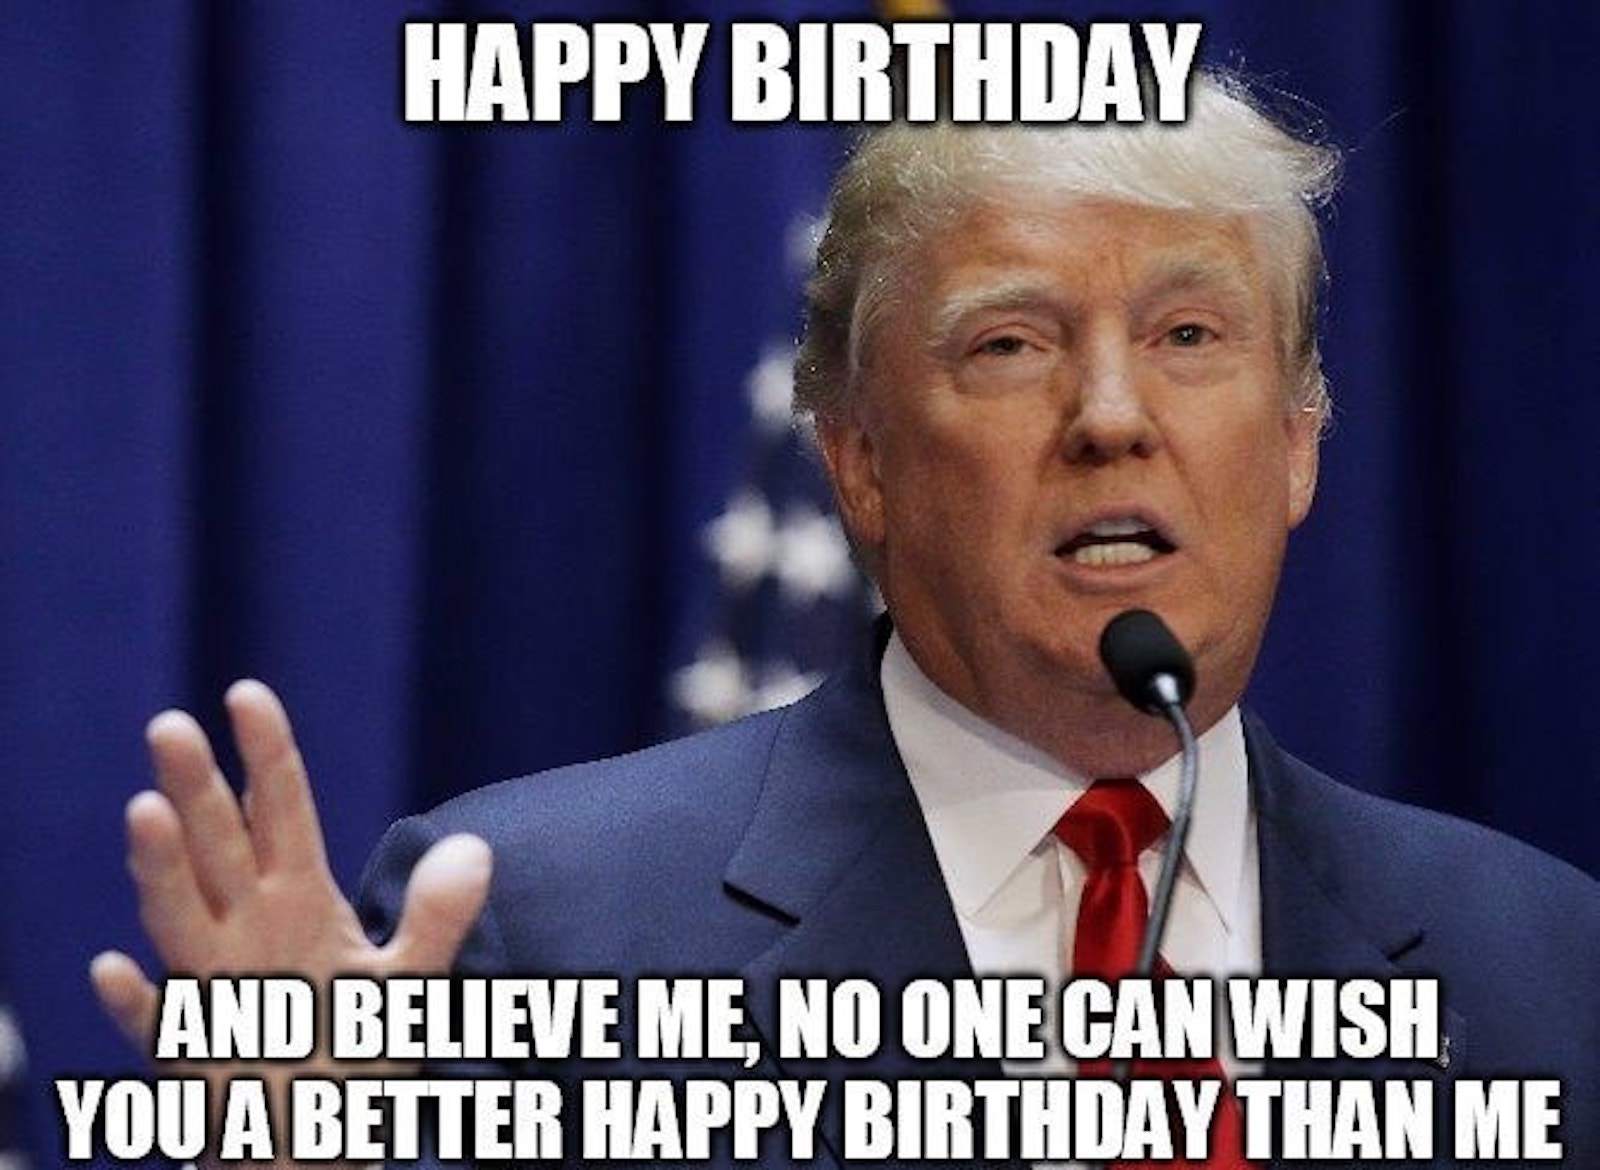 Happy birthday meme of Trump